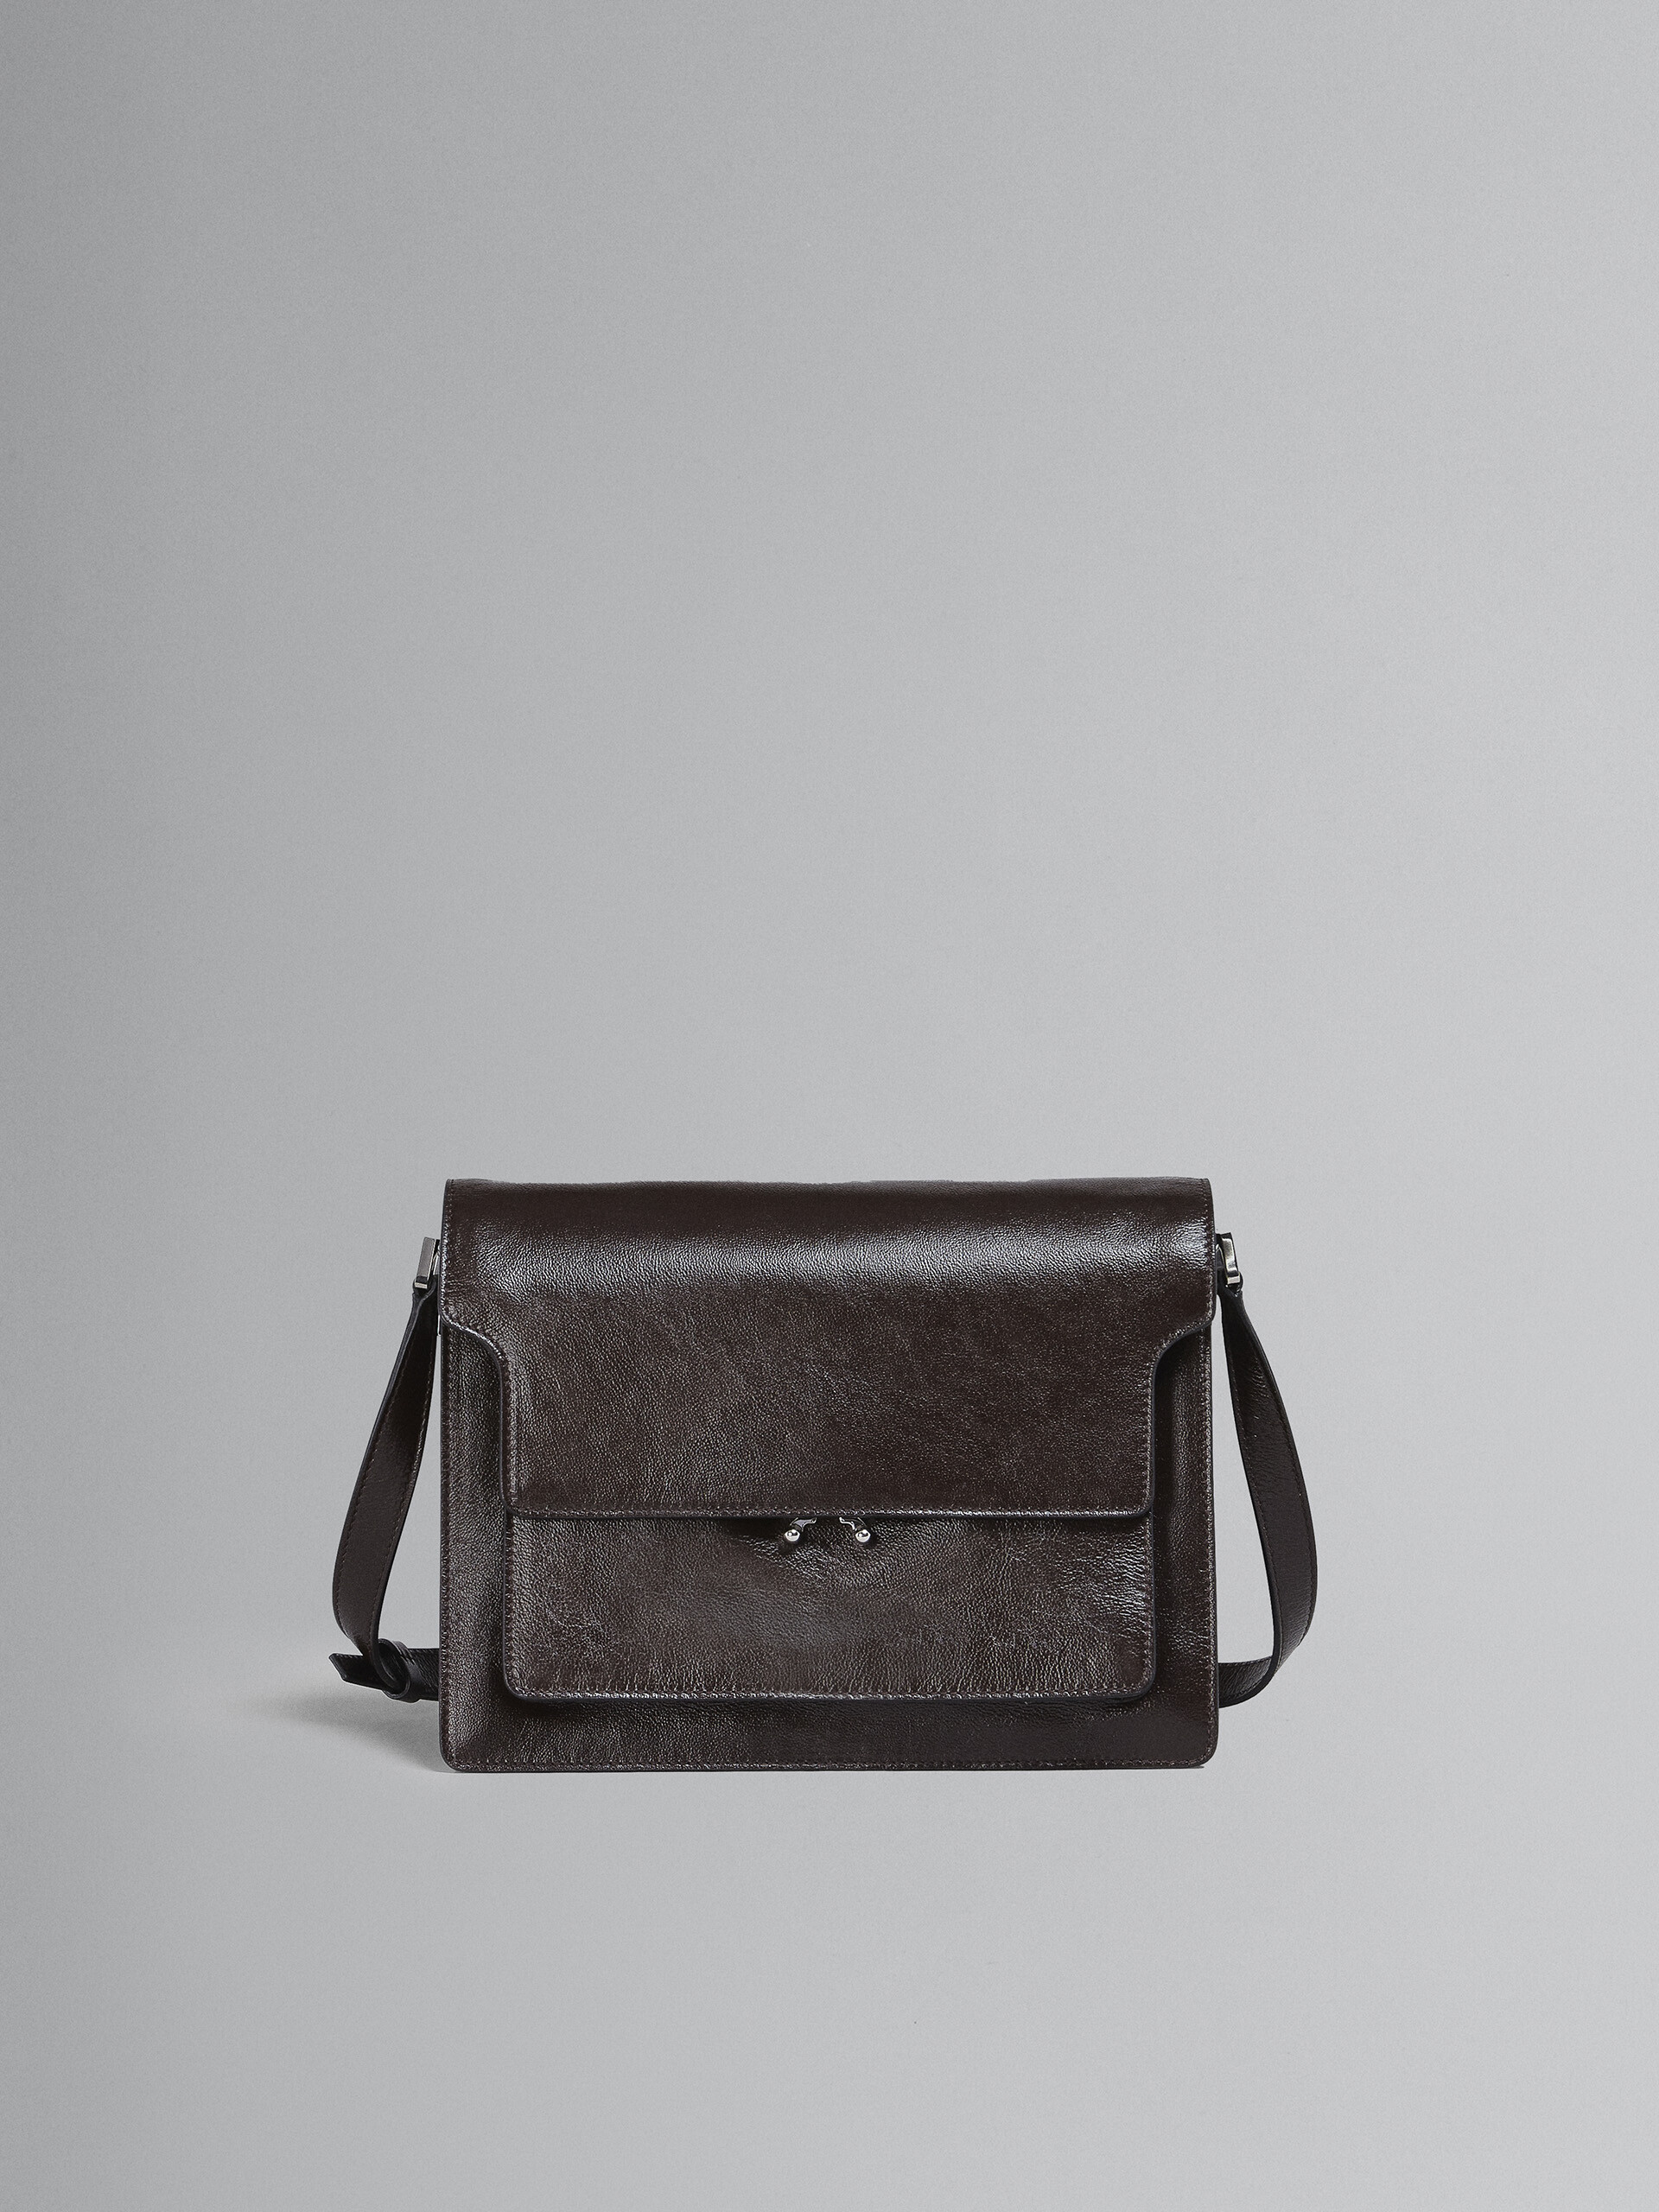 TRUNK SOFT large bag in brown leather - Shoulder Bag - Image 1